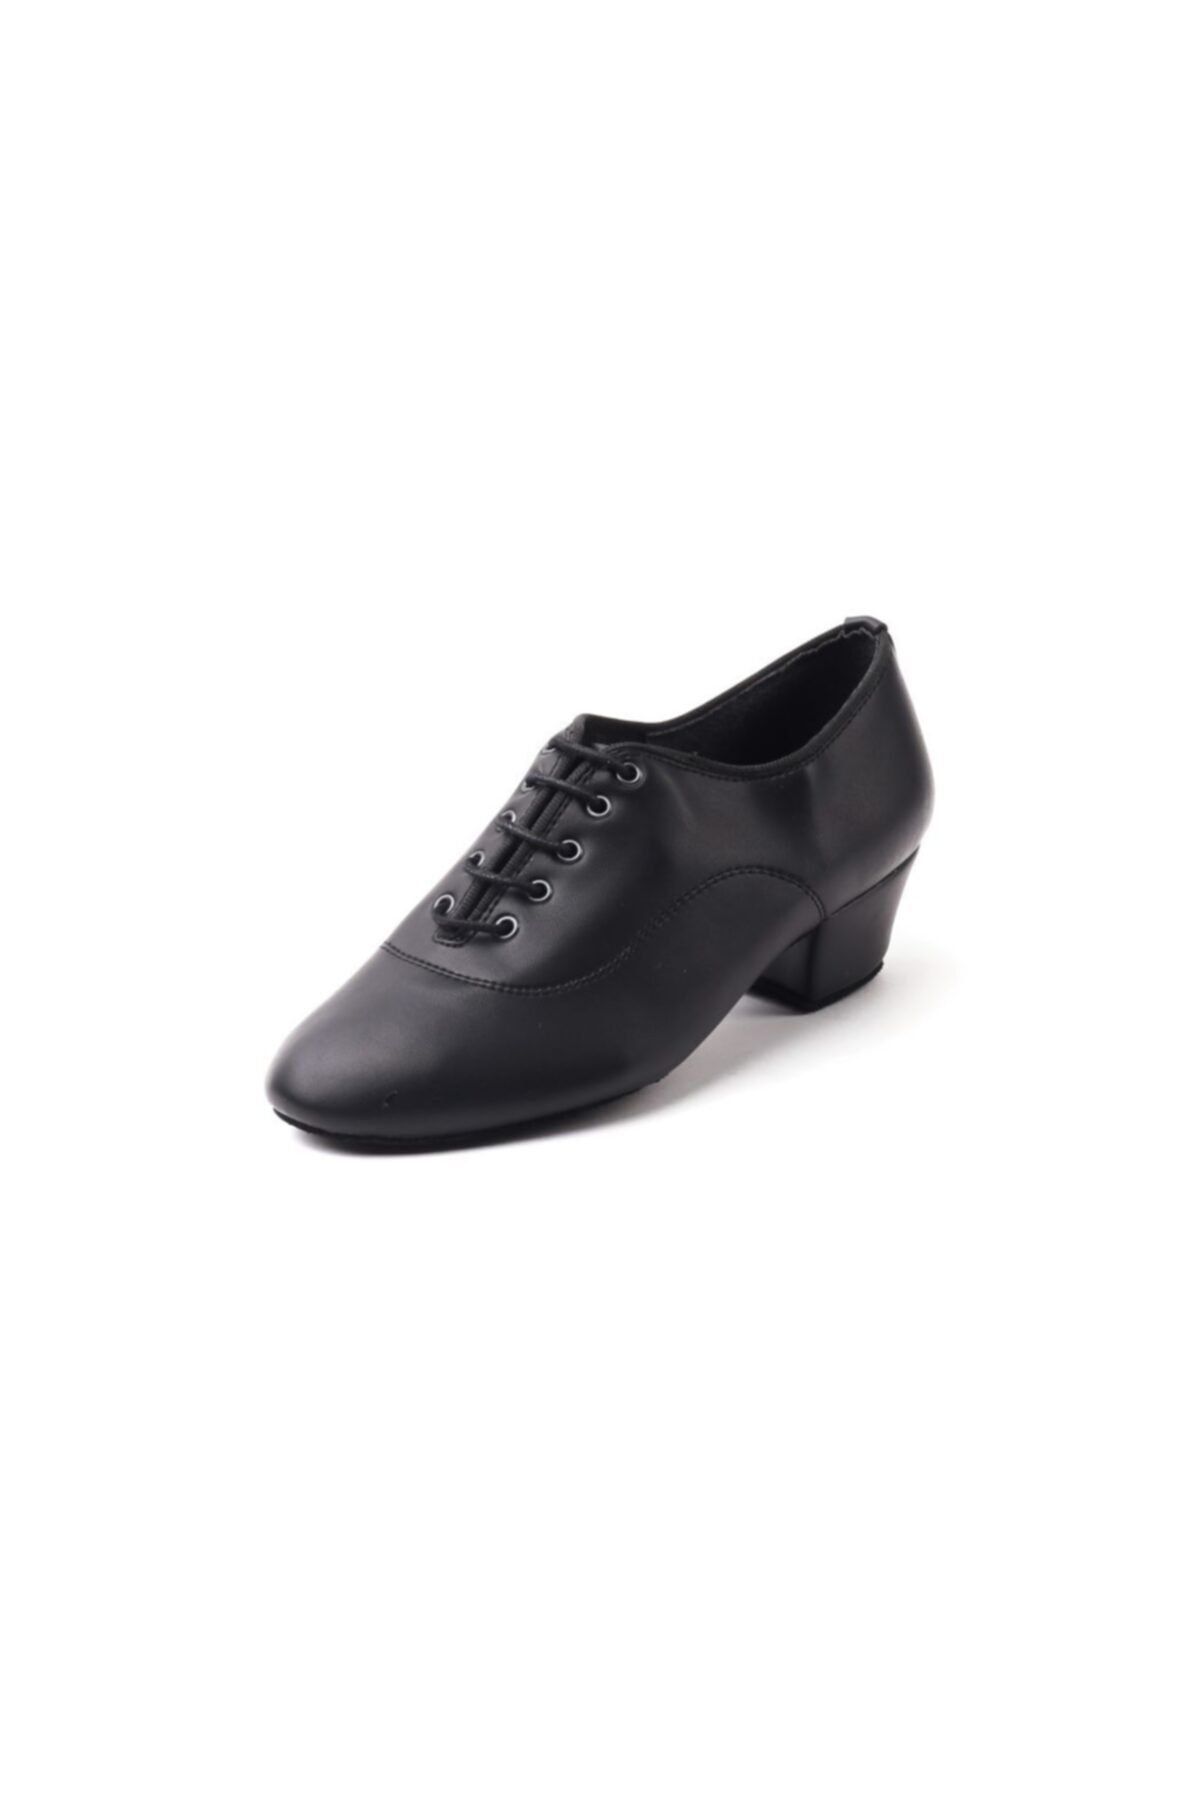 DANS AYAKKABISI Kadın Siyah Klasik Topuklu Ayakkabı